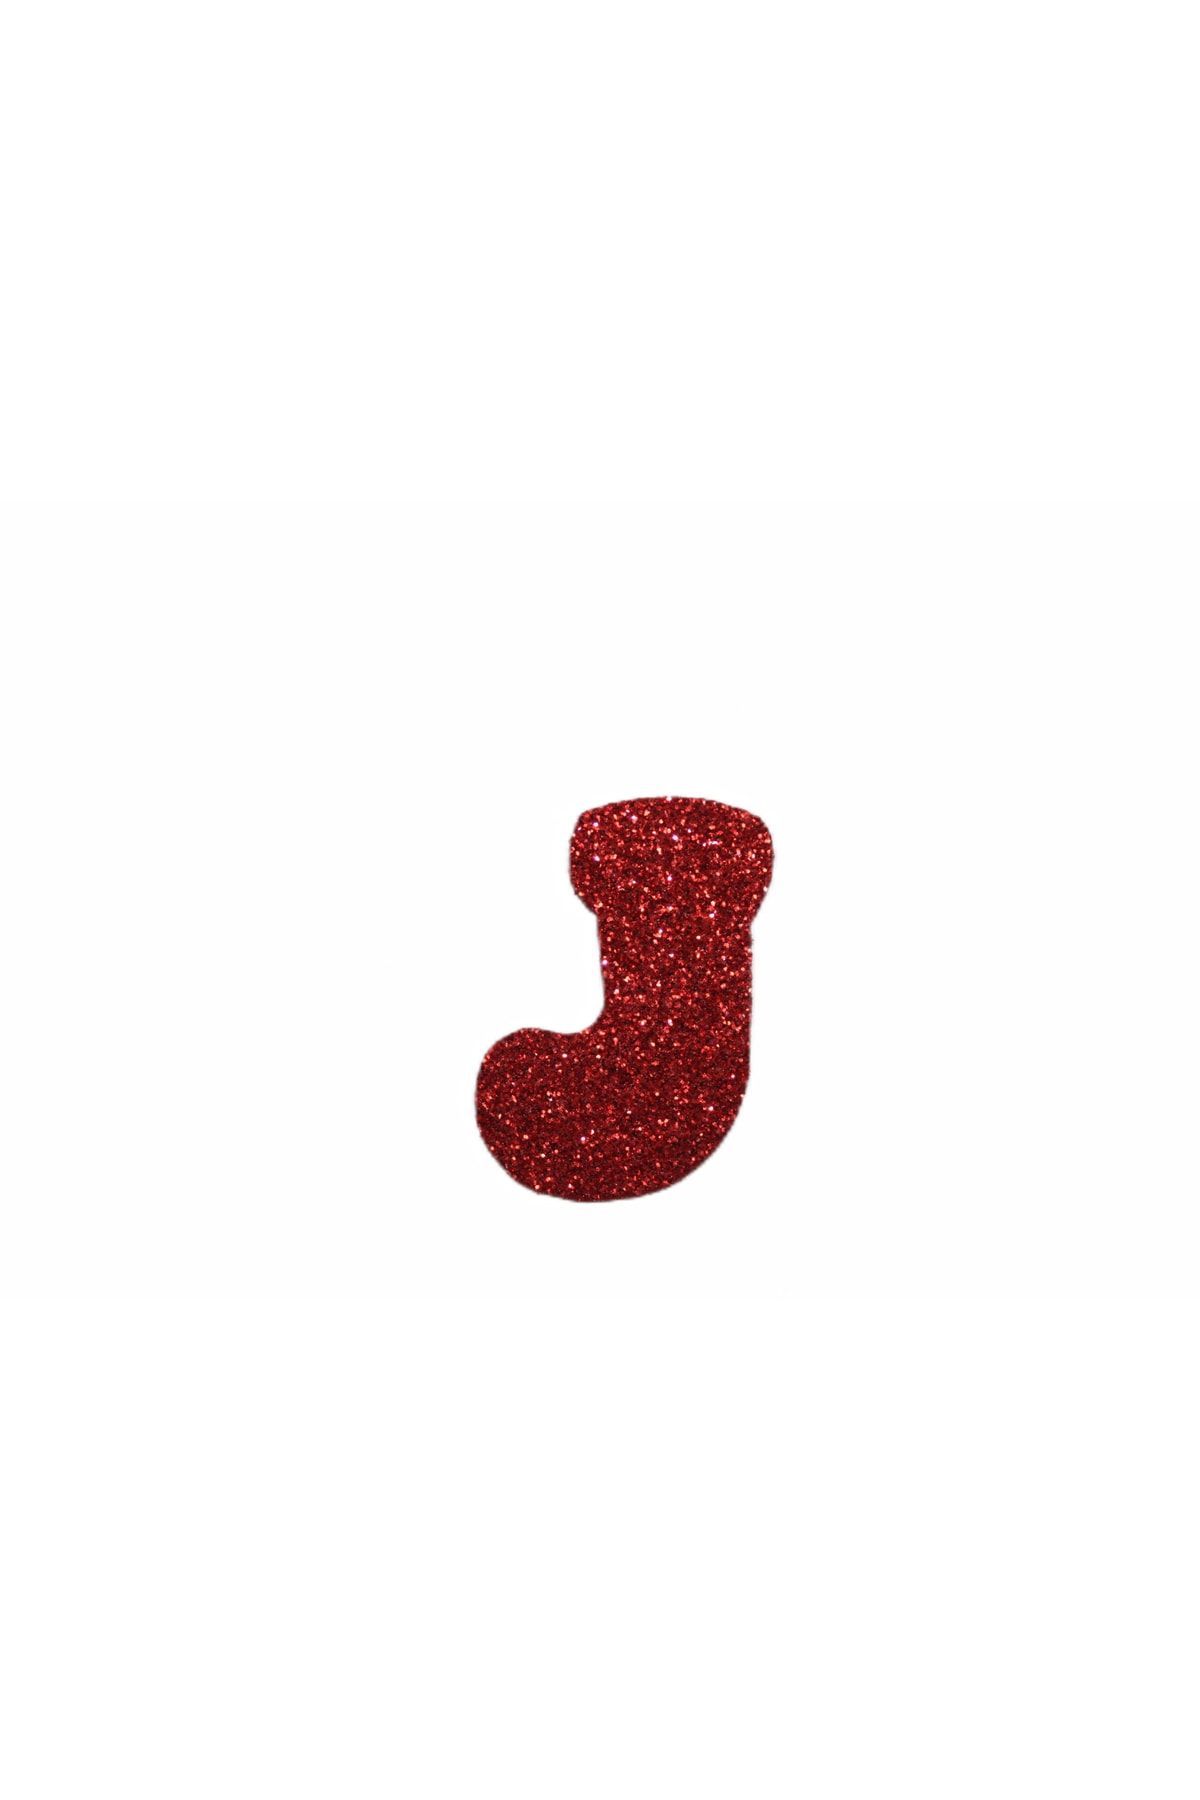 roco paper Simli Eva Sticker Kırmızı Çorap Desenli 4cm 12’li Paket